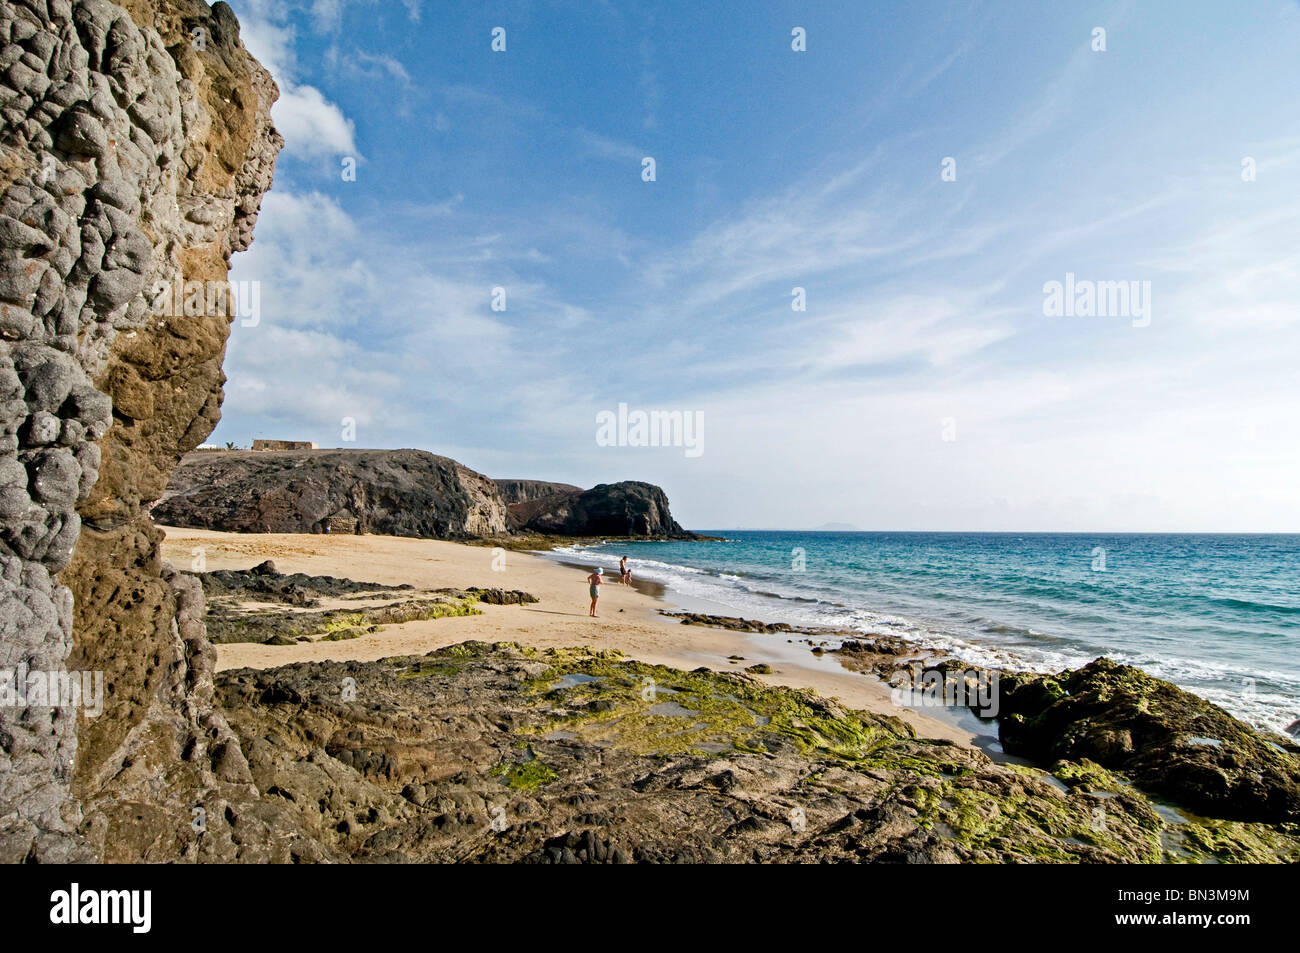 Playa del Pozo, Playas de Papagayo, Lanzarote, Spain Stock Photo